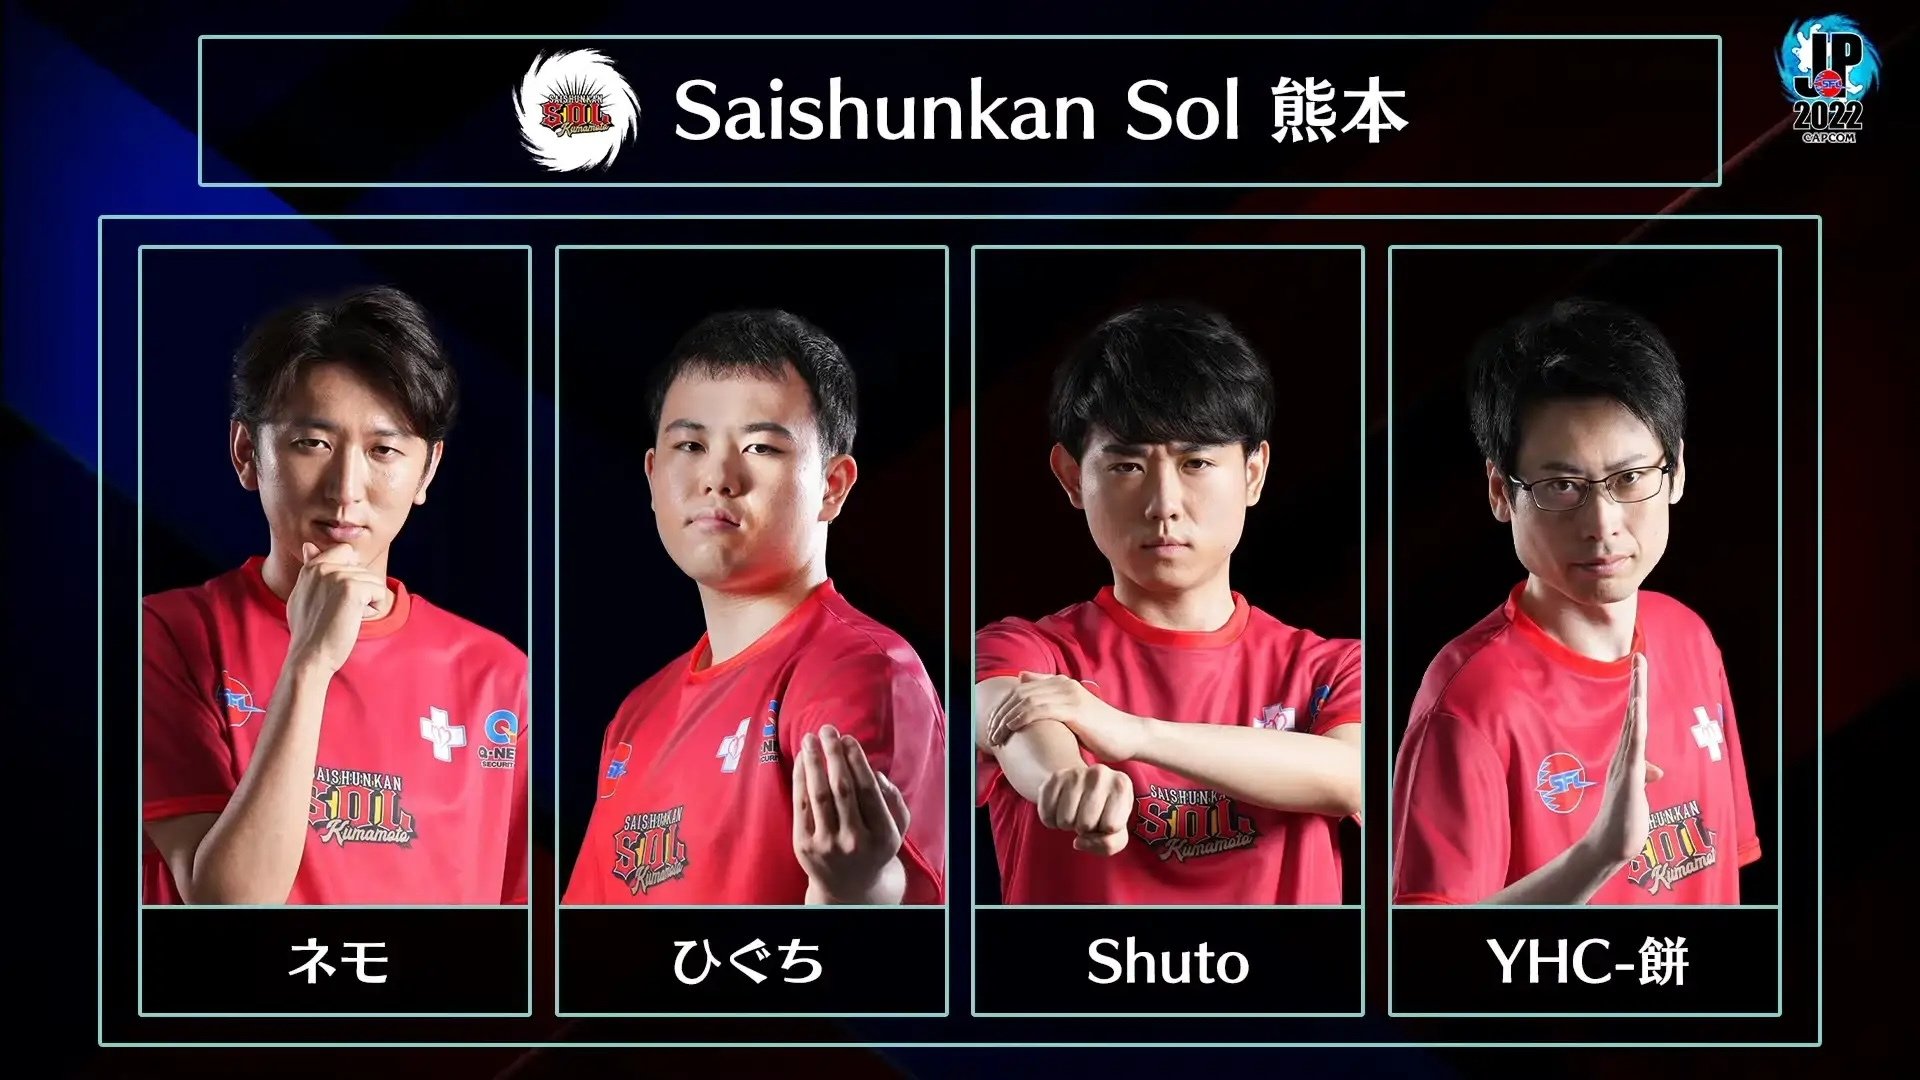 Saishunkan Sol 熊本 